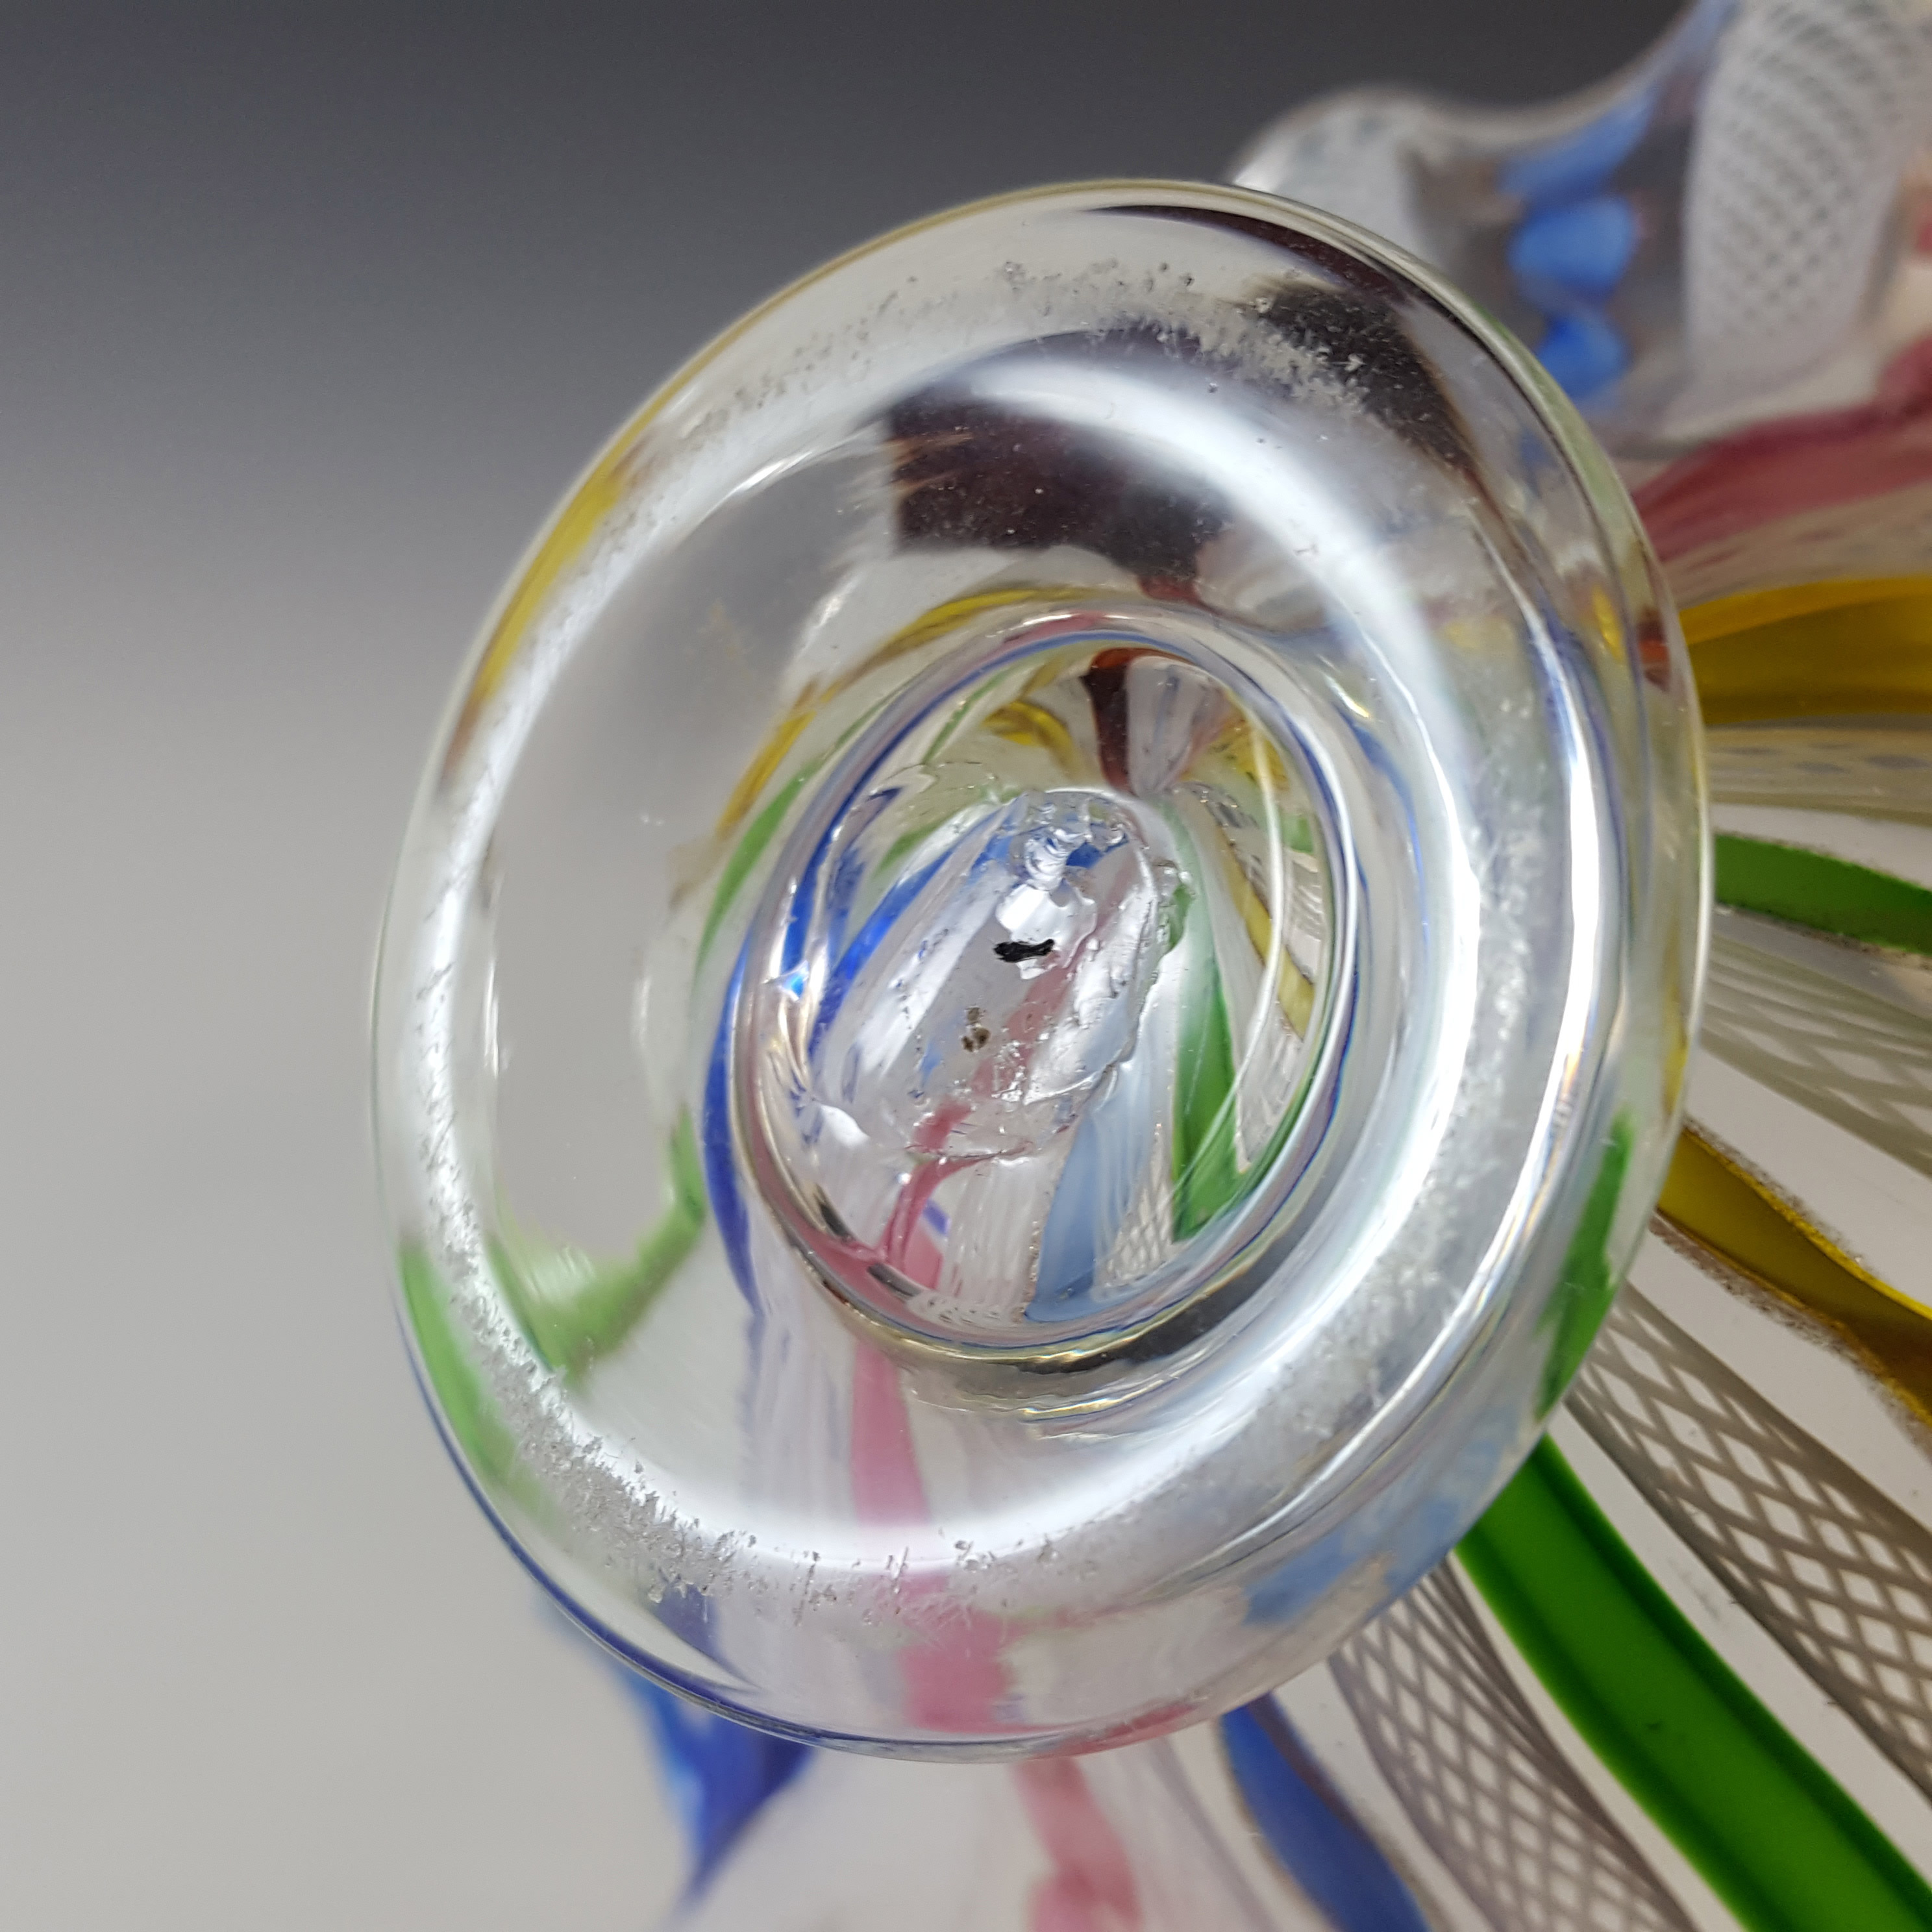 AVEM Murano Multicoloured Glass Zanfirico Filigree Bowl - Click Image to Close